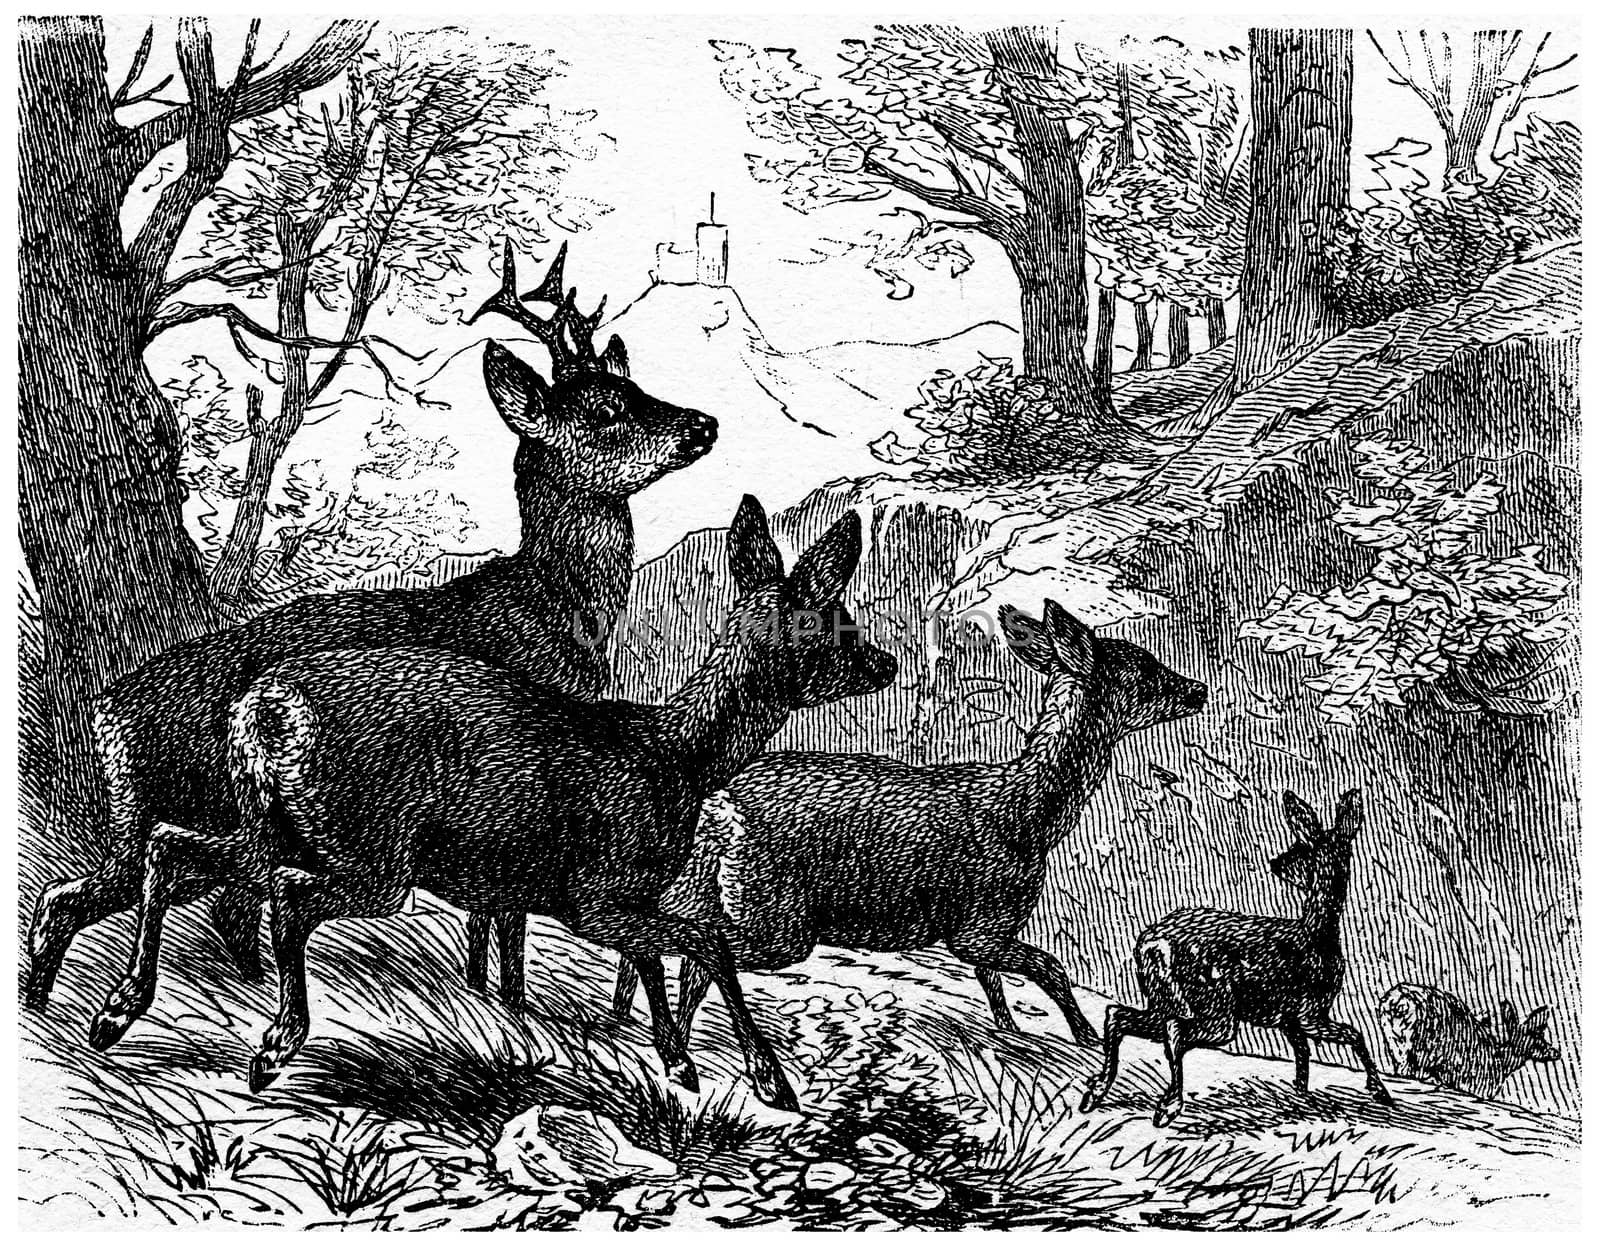 Deer, vintage engraved illustration. La Vie dans la nature, 1890.